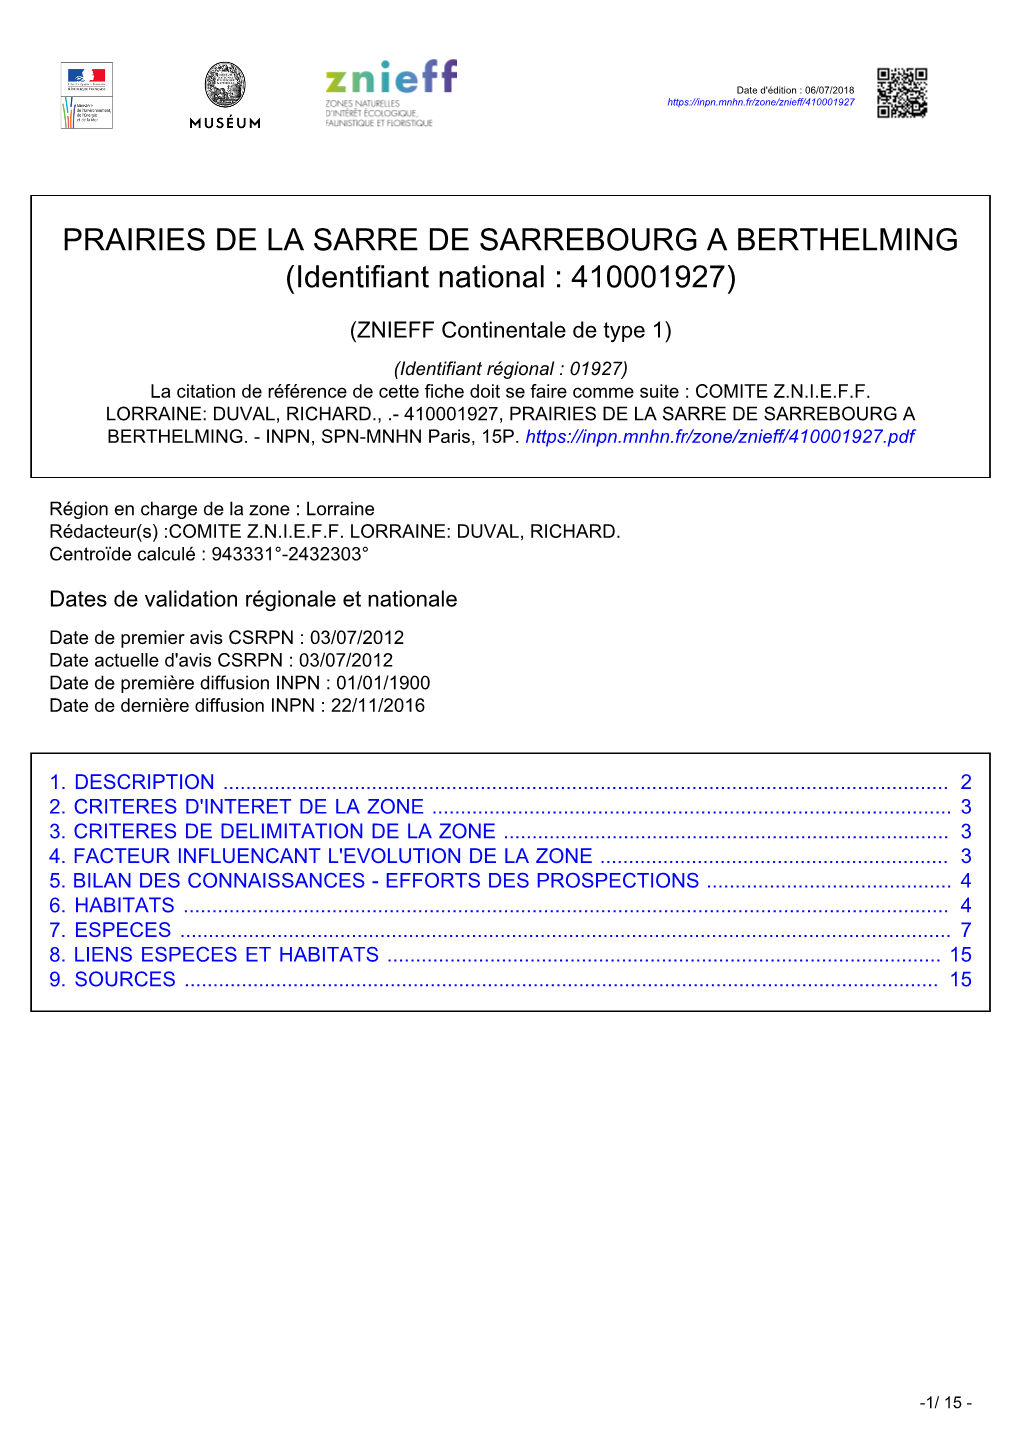 PRAIRIES DE LA SARRE DE SARREBOURG a BERTHELMING (Identifiant National : 410001927)